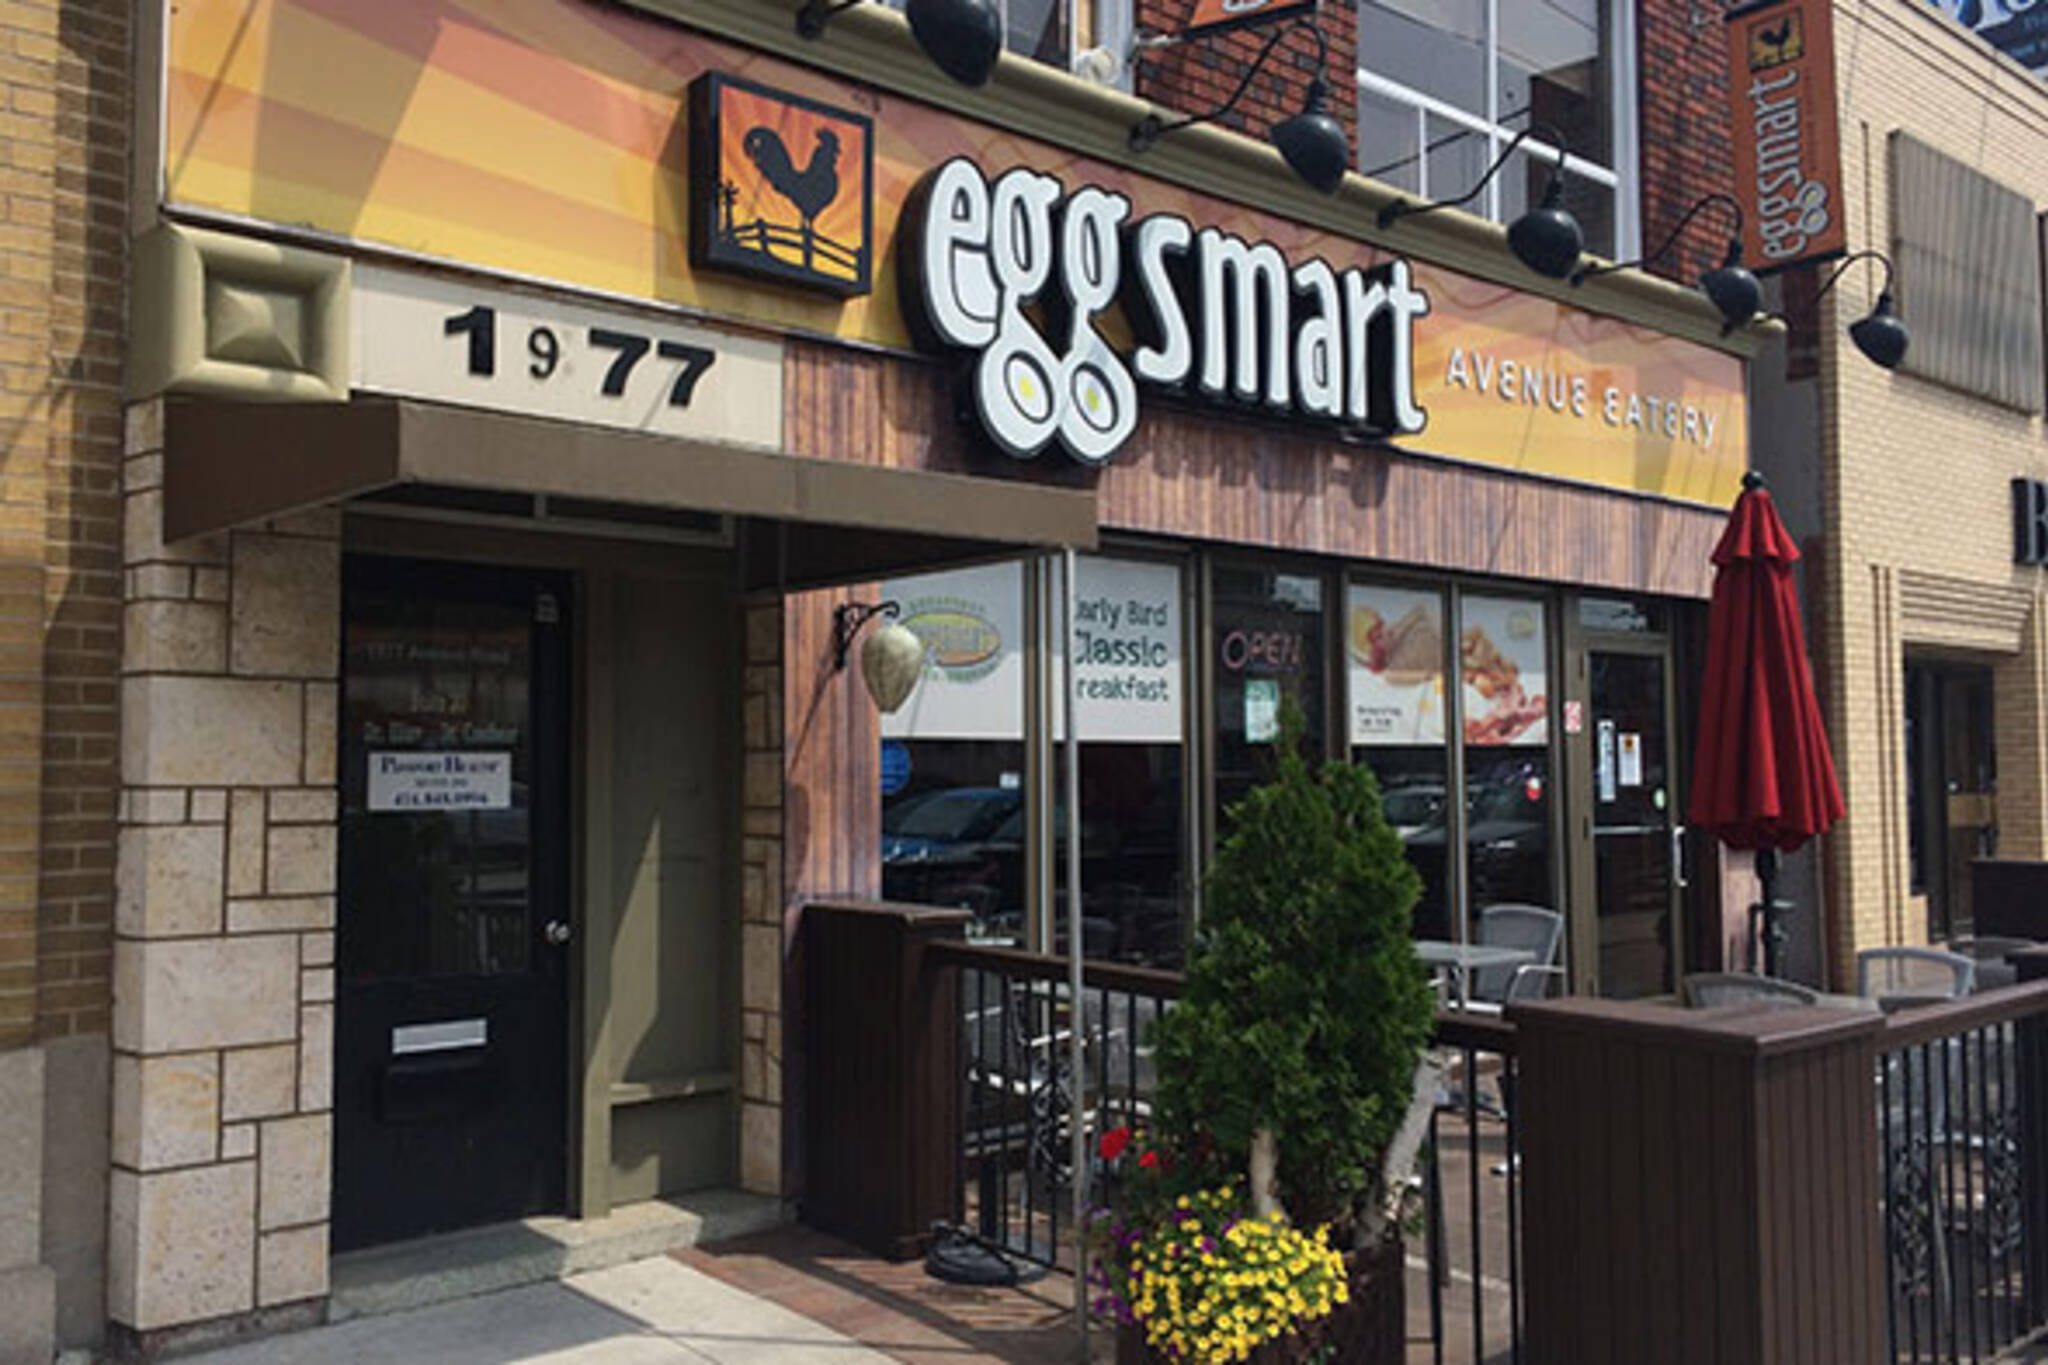 Eggsmart Avenue Toronto